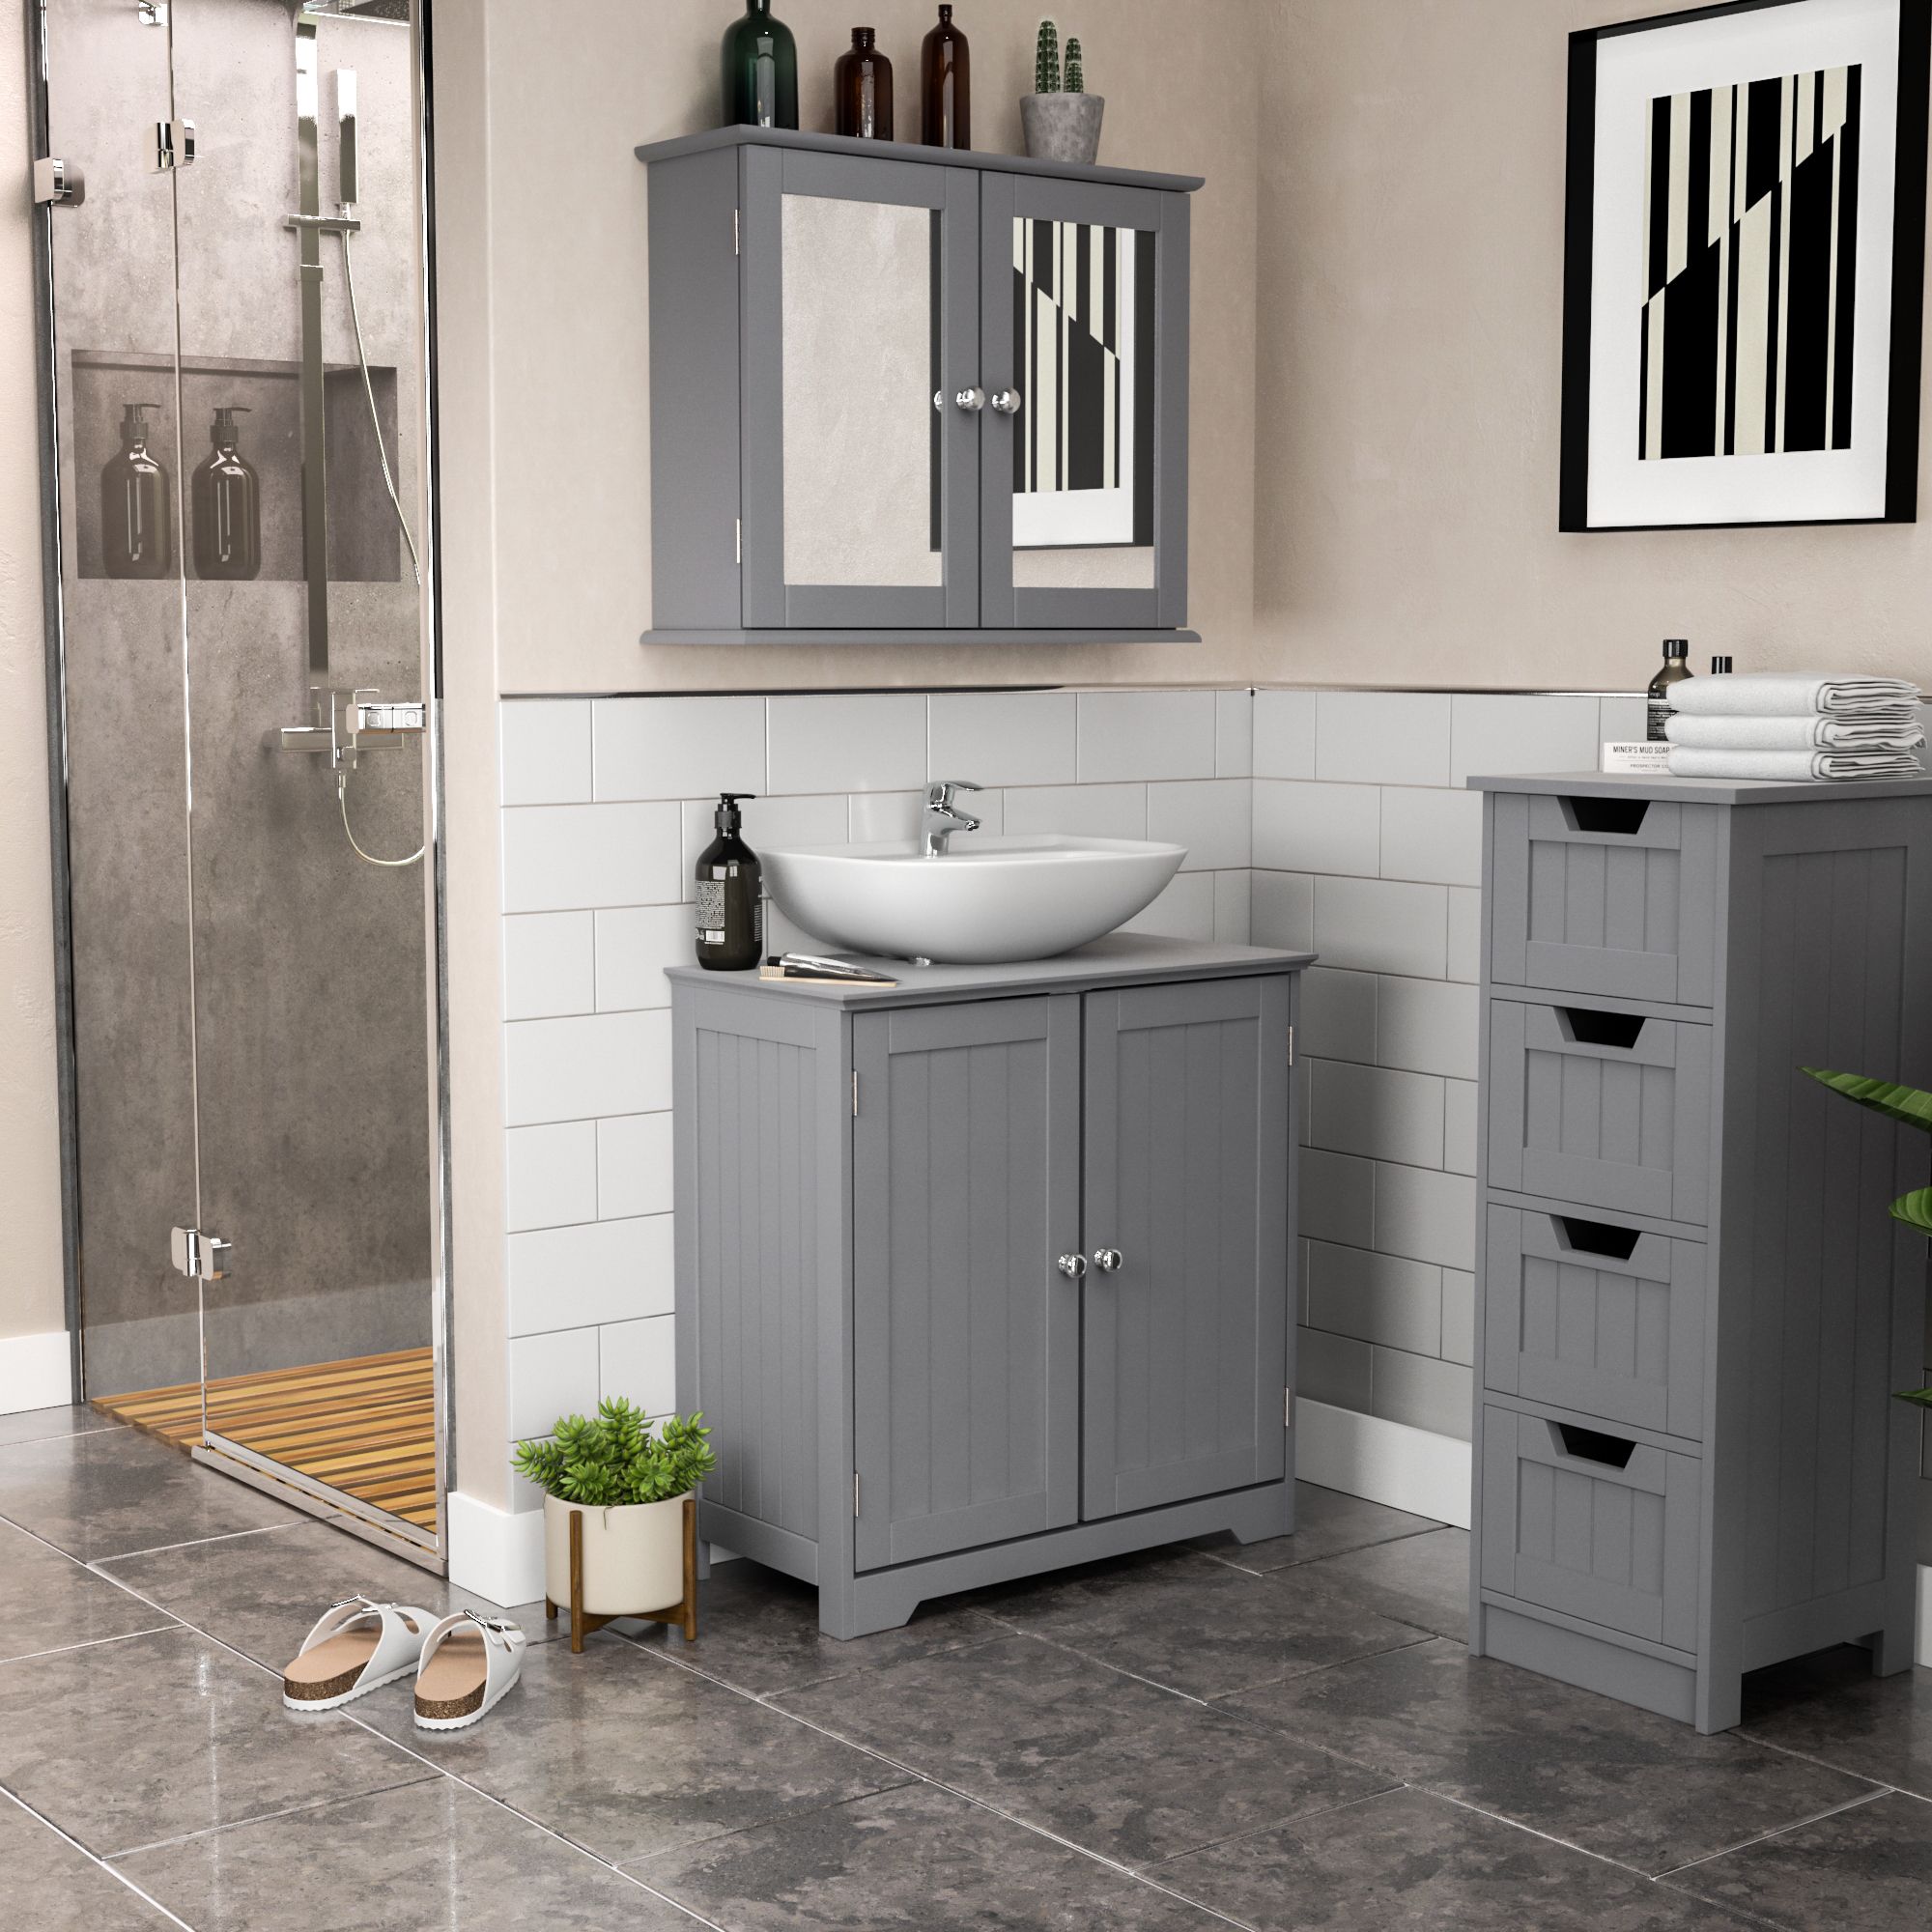 Lassic Rebecca Jones Matt Grey Freestanding Double Bathroom Sink cabinet (H)60cm (W)60cm